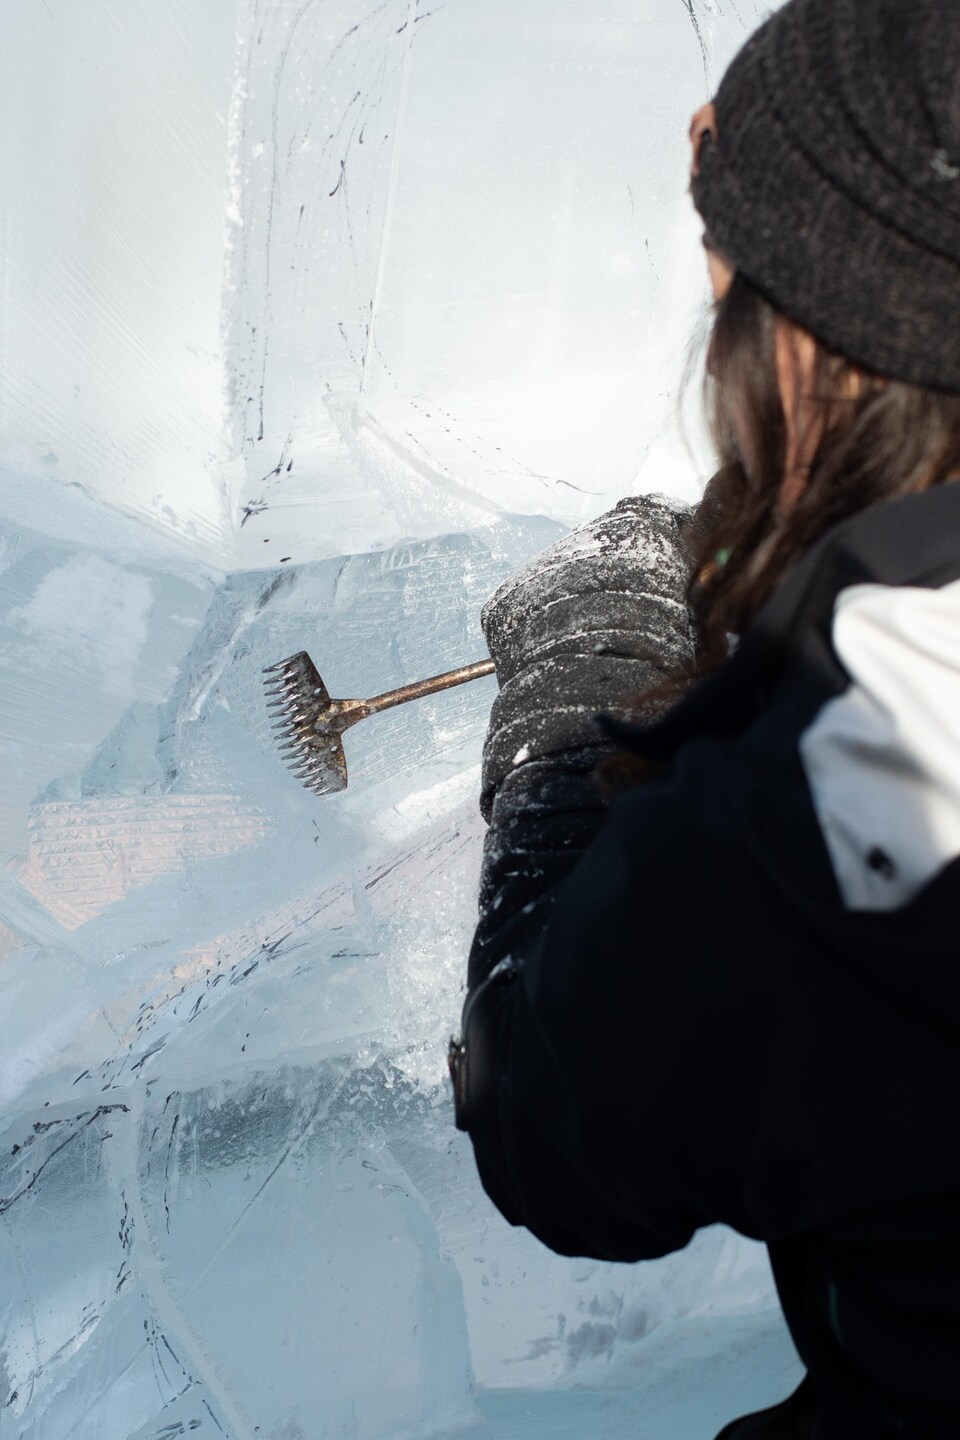 L'artiste, de dos, gratte la surface de la glace à l'aide d'un rasoir sur un manche. L'outil laisse une texture achurée sur la glace.